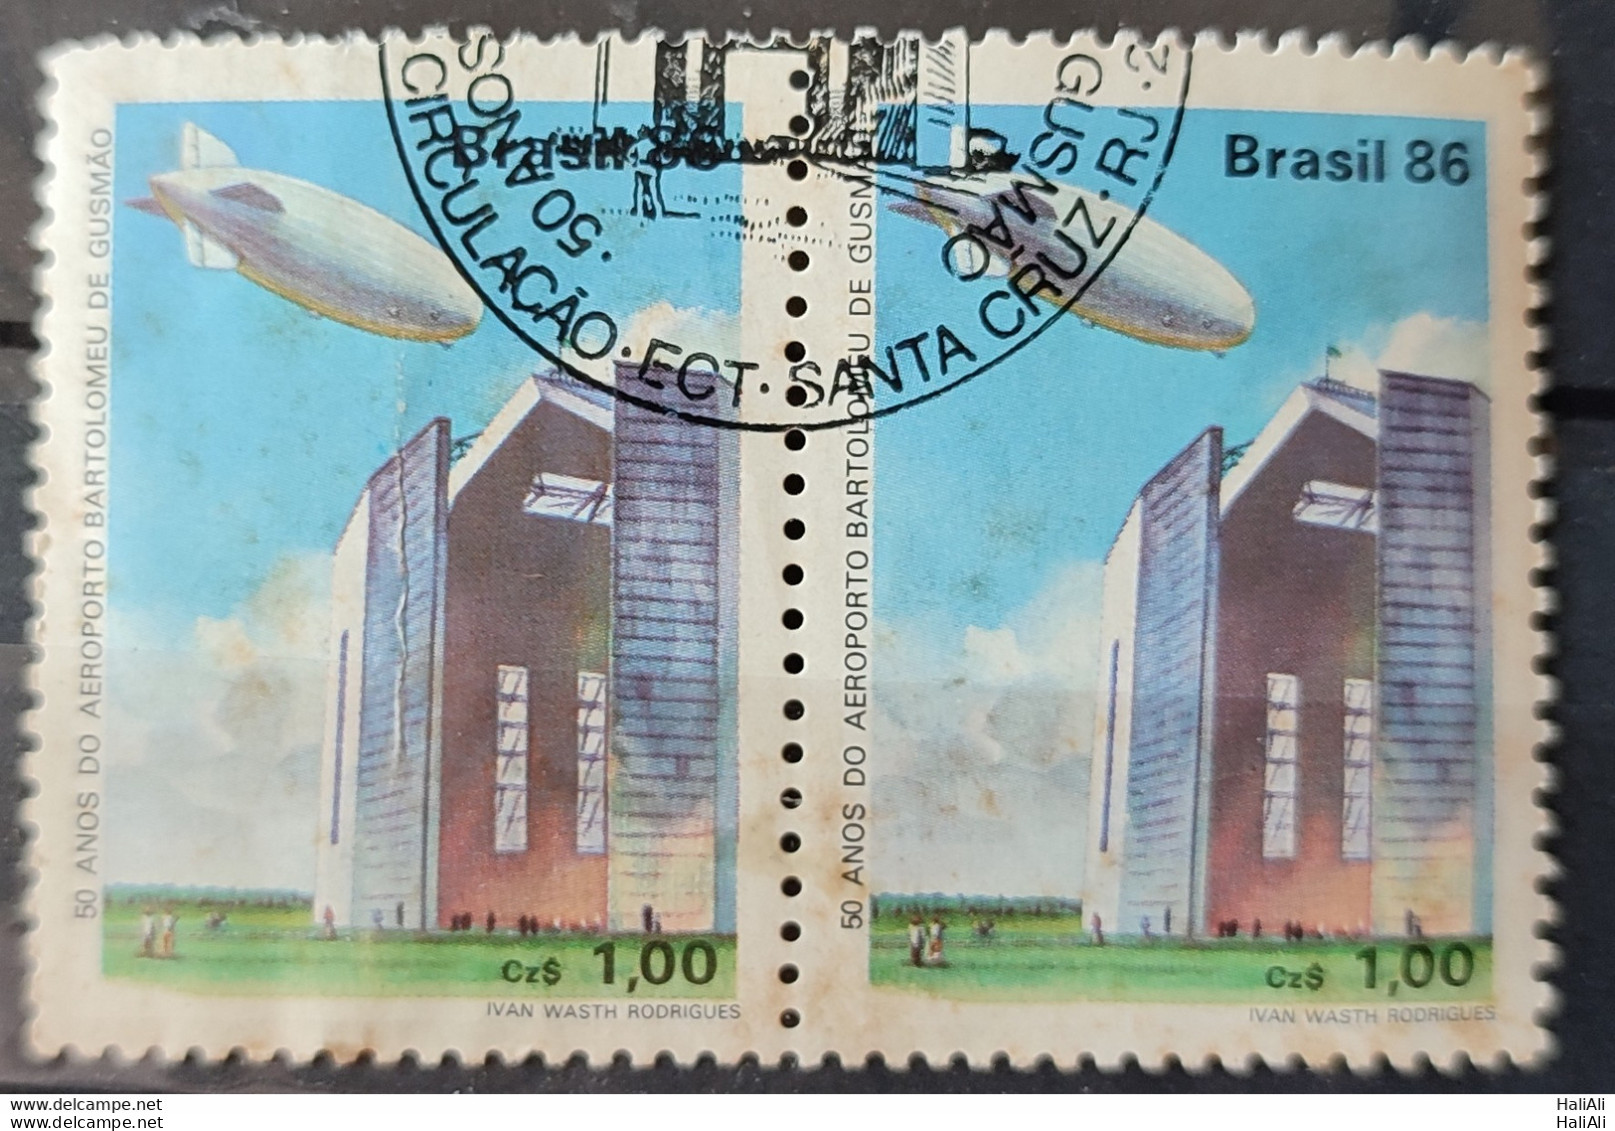 C 1541 Brazil Stamp 50 Years Airport Bartolomeu De Gusmao Balloon Hangar 1986 Dupla Circulated 2.jpg - Oblitérés